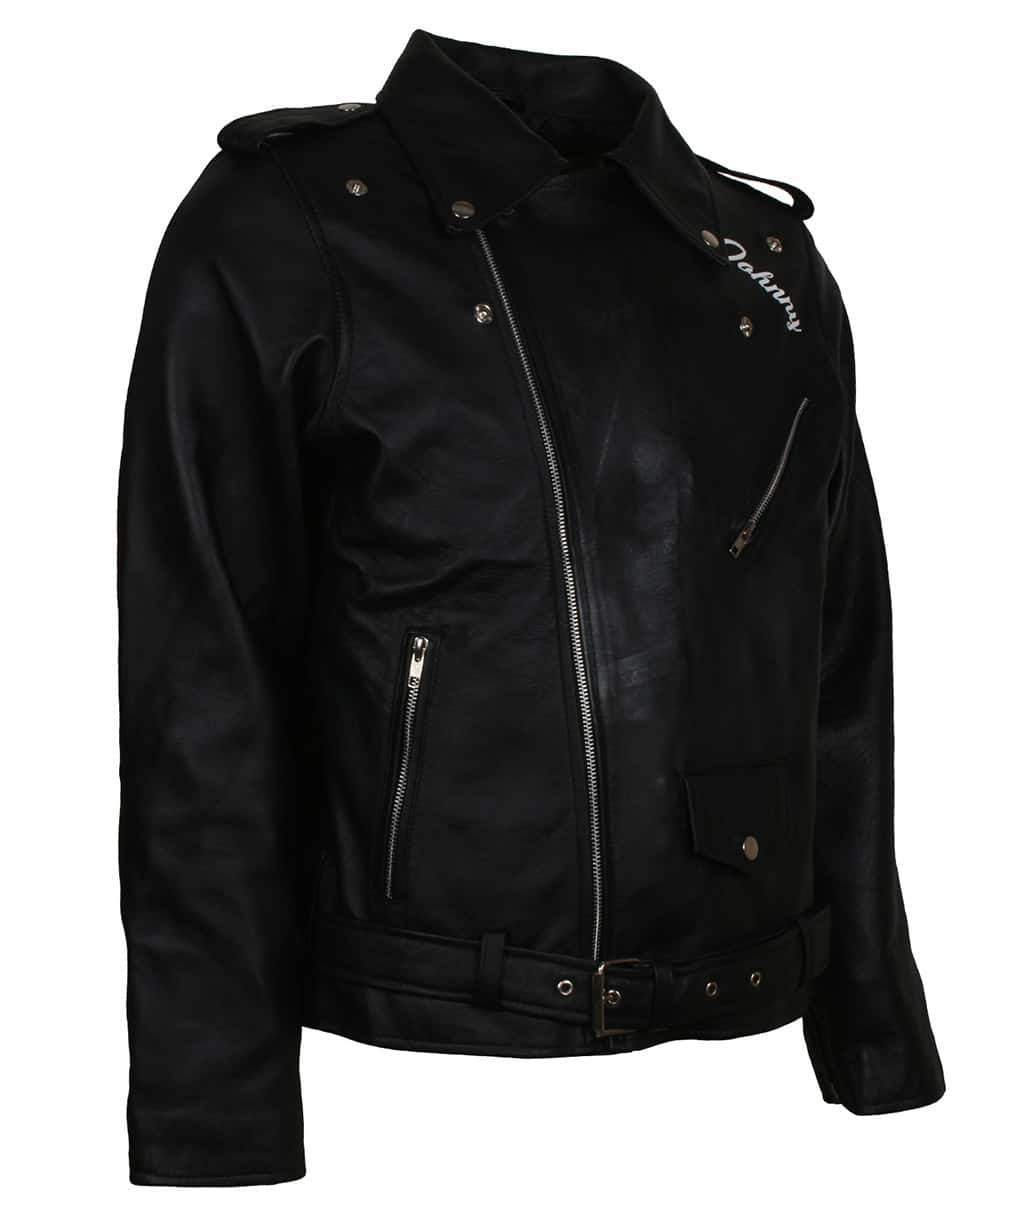 BRMC-Black-Rebels-Wild-One-Men-Motorcycle-Club-Leather-Jacket-Black